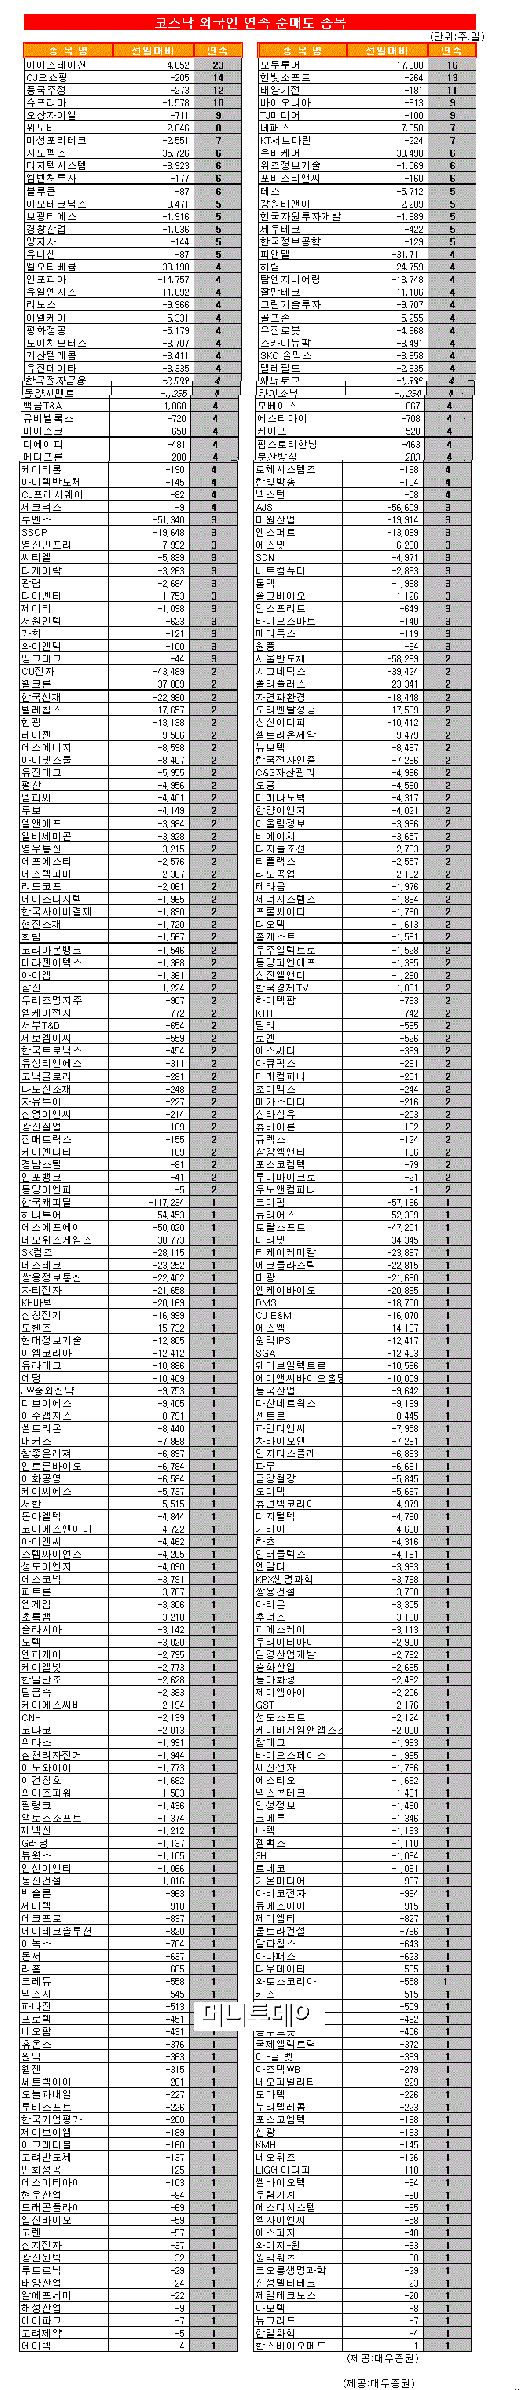 [표]코스닥 외국인 연속 순매도 종목-1일